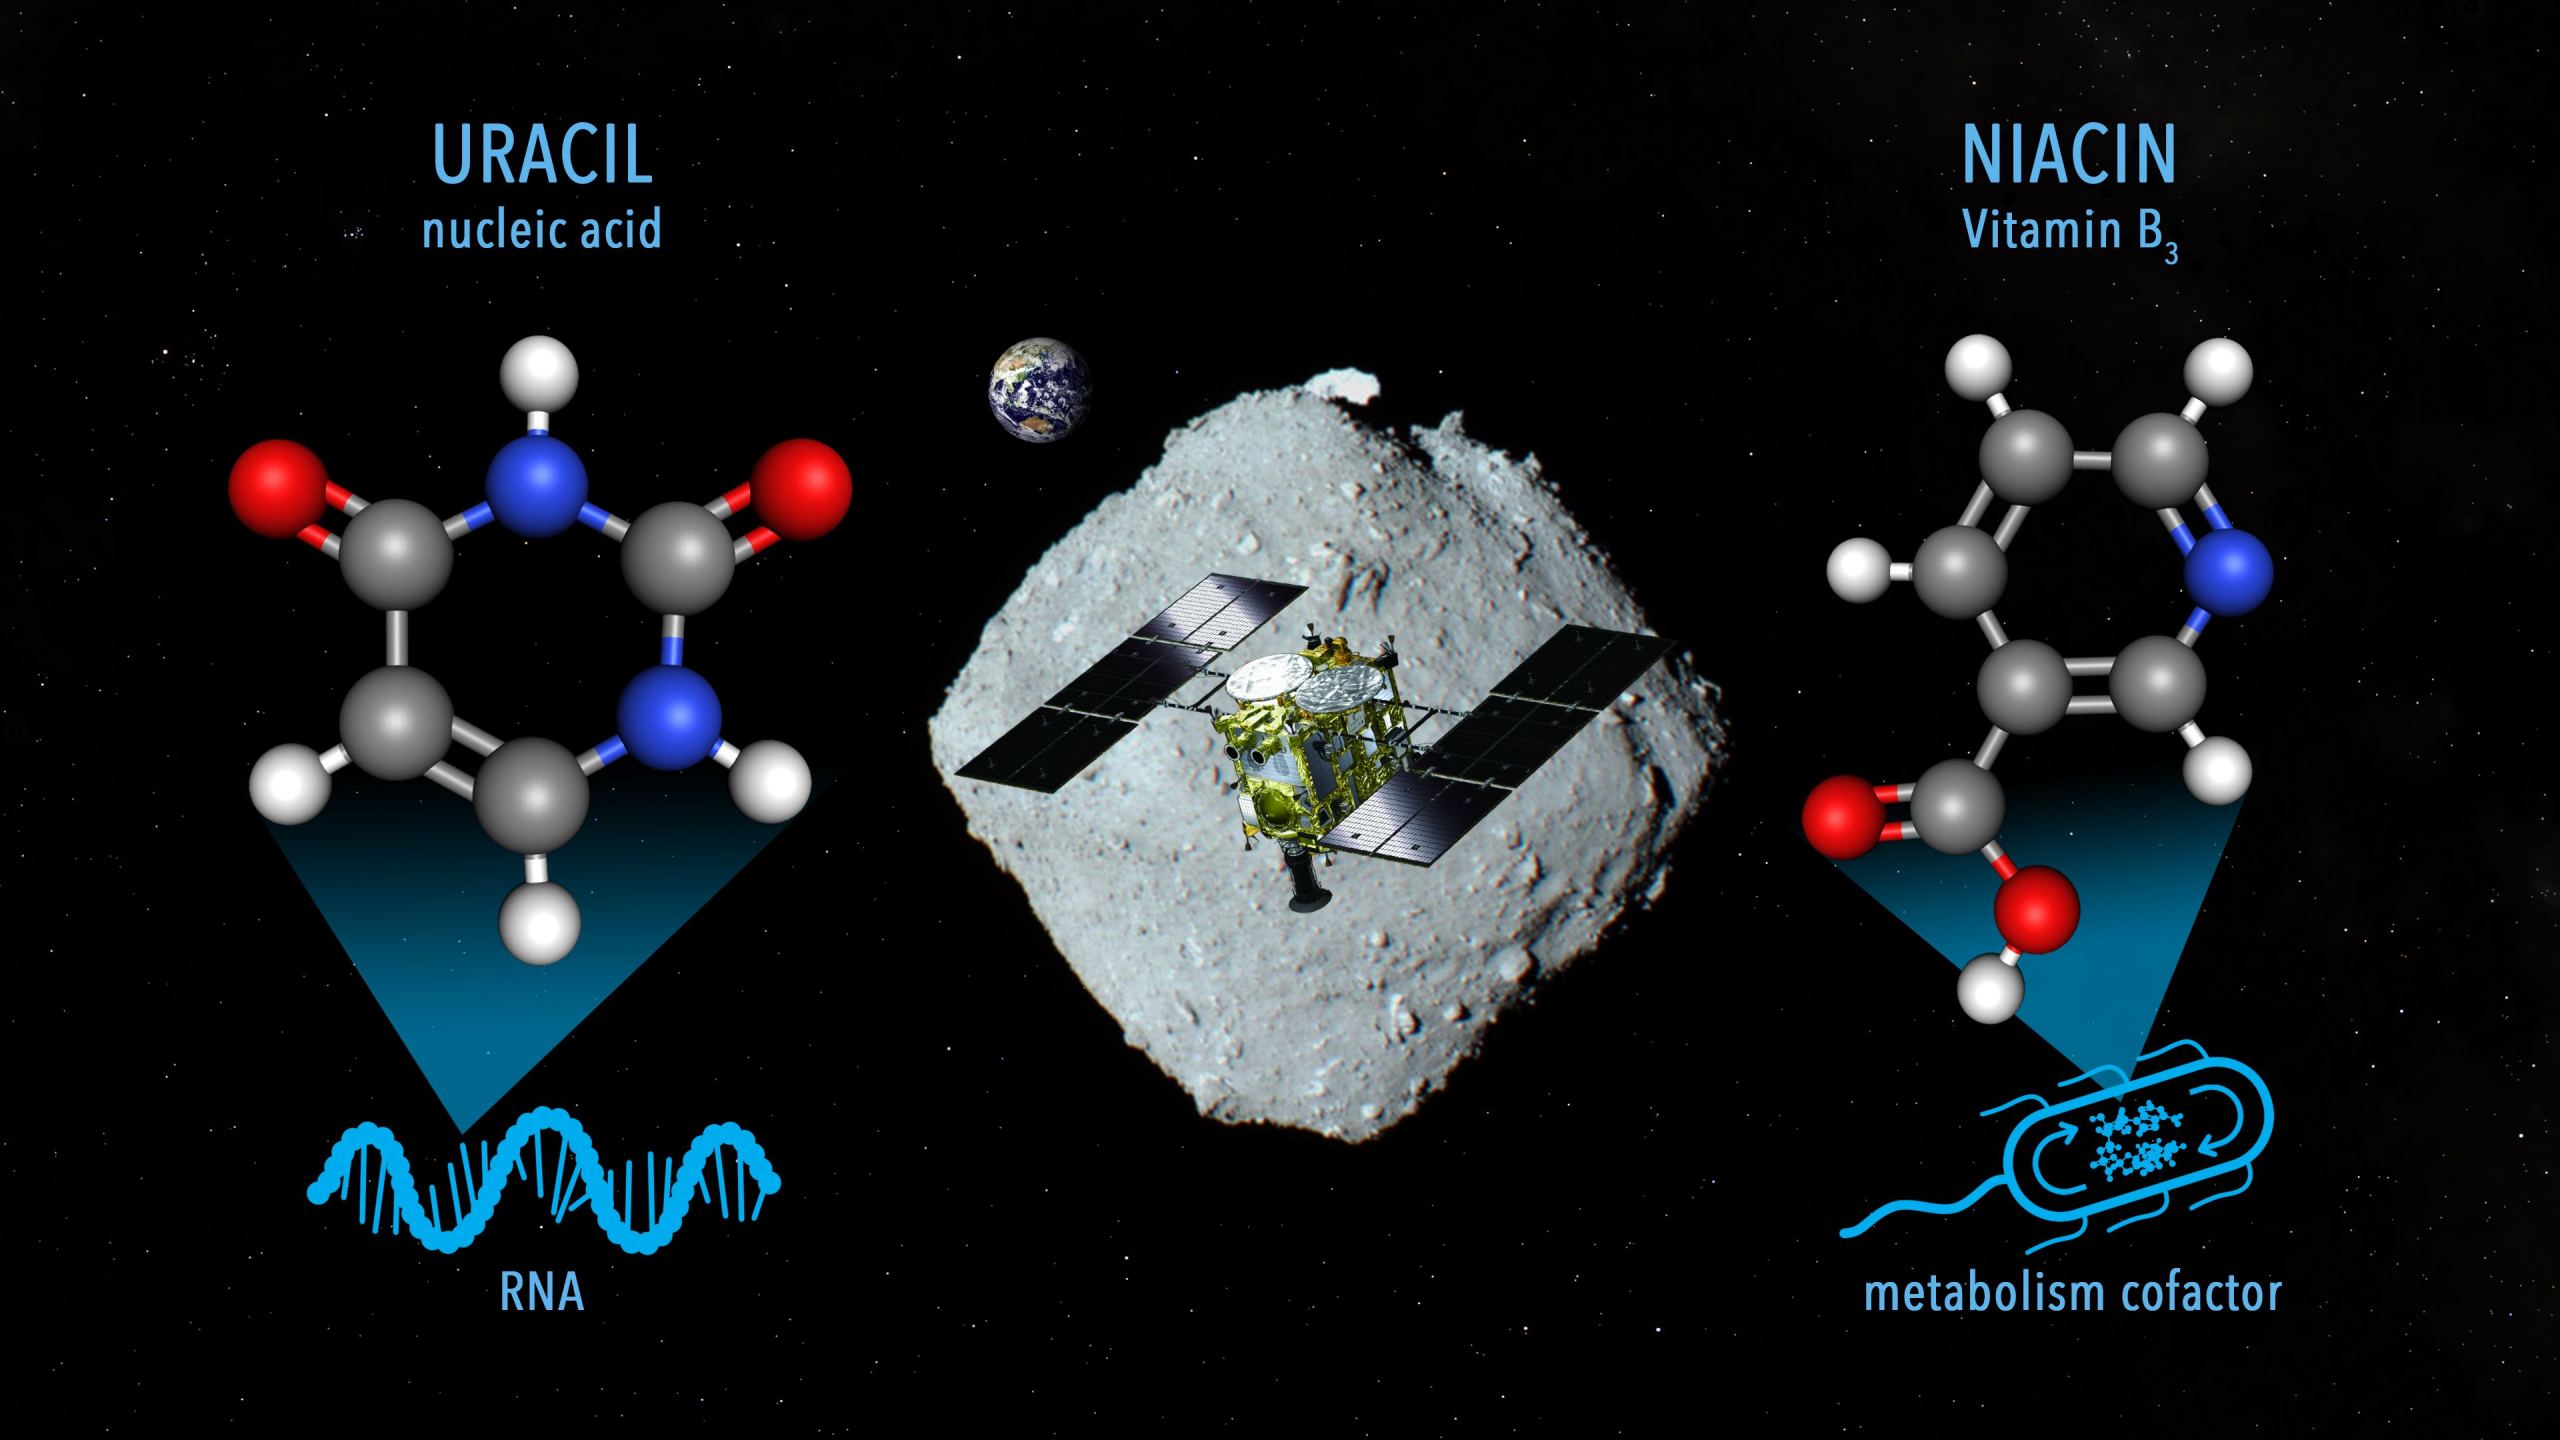 El asteroide Ryugu contiene niacina (también conocida como vitamina B3)